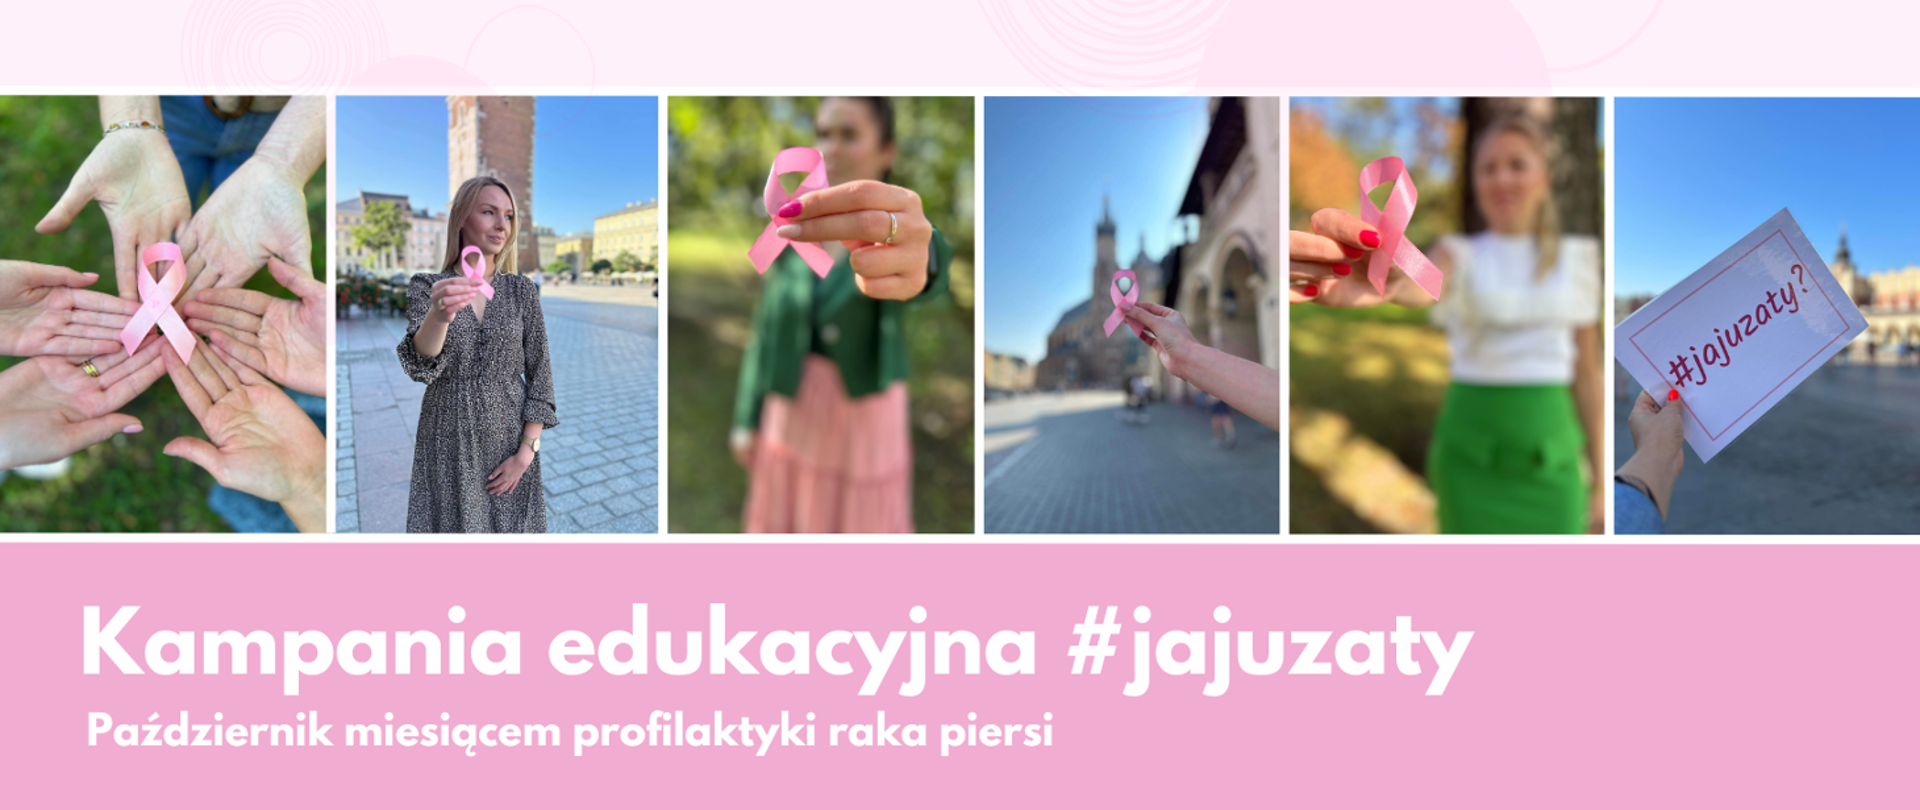 6 zdjęć znajdujących się obok siebie, każde zdjęcie przedstawia kobiety które trzymają różową wstążeczkę i kartkę z napisem #jajuzaty?, w tle zdjęć wieża ratuszowa miasta Krakowa i Kościół Mariacki.